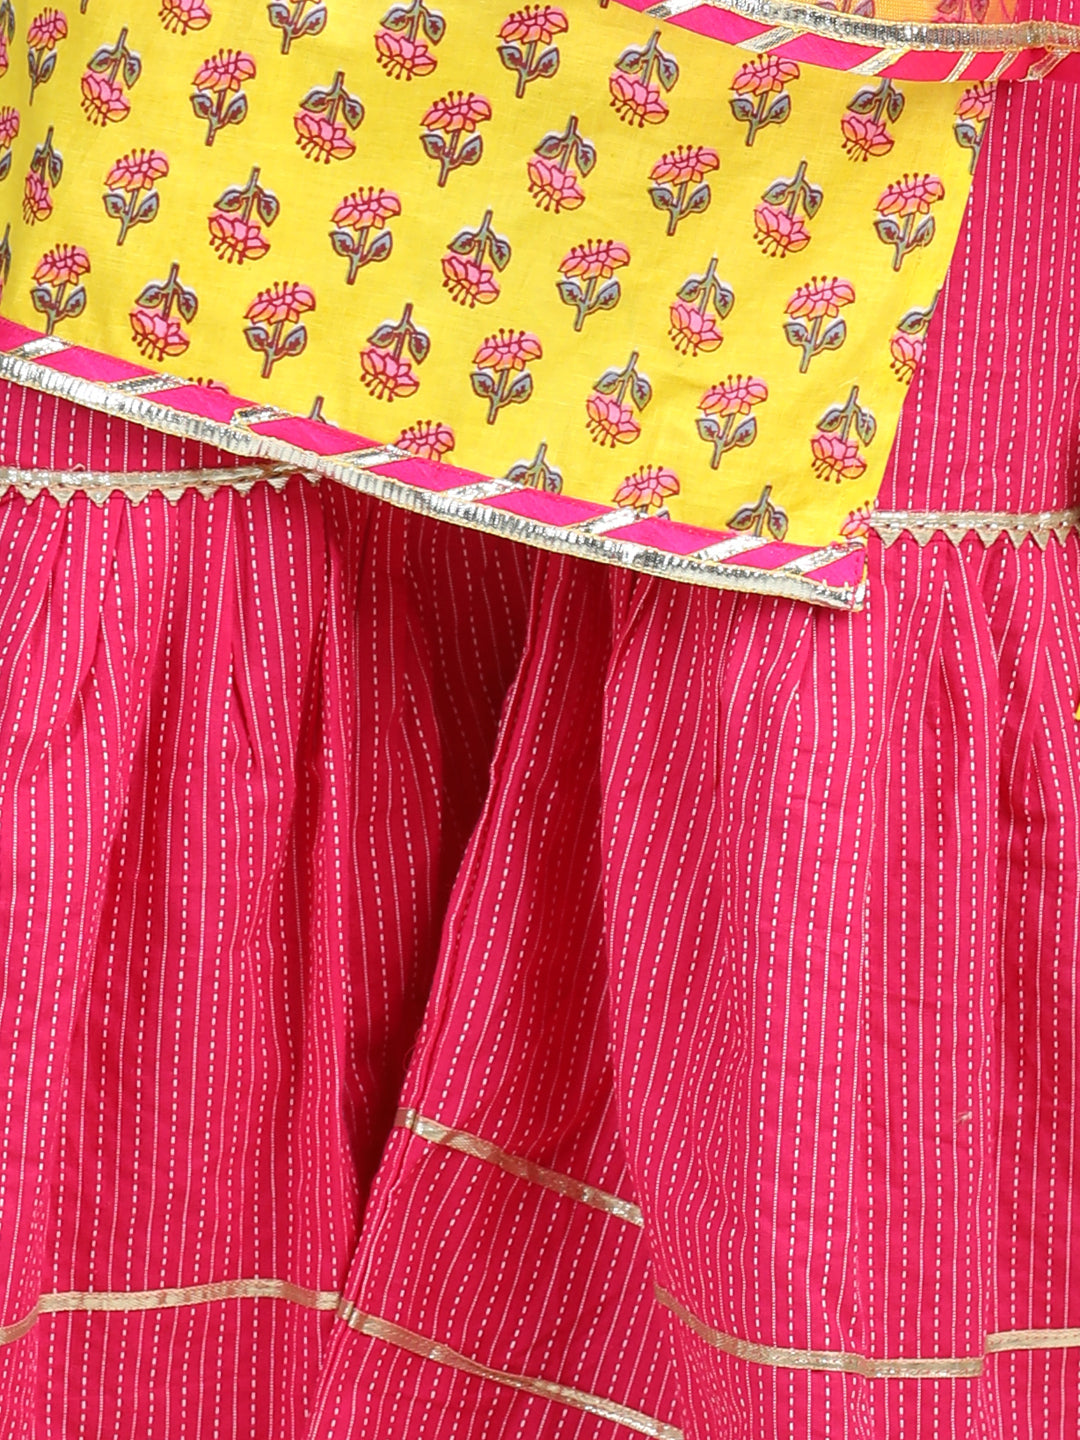 Yellow Printed kurti with Pink sharara with dupatta